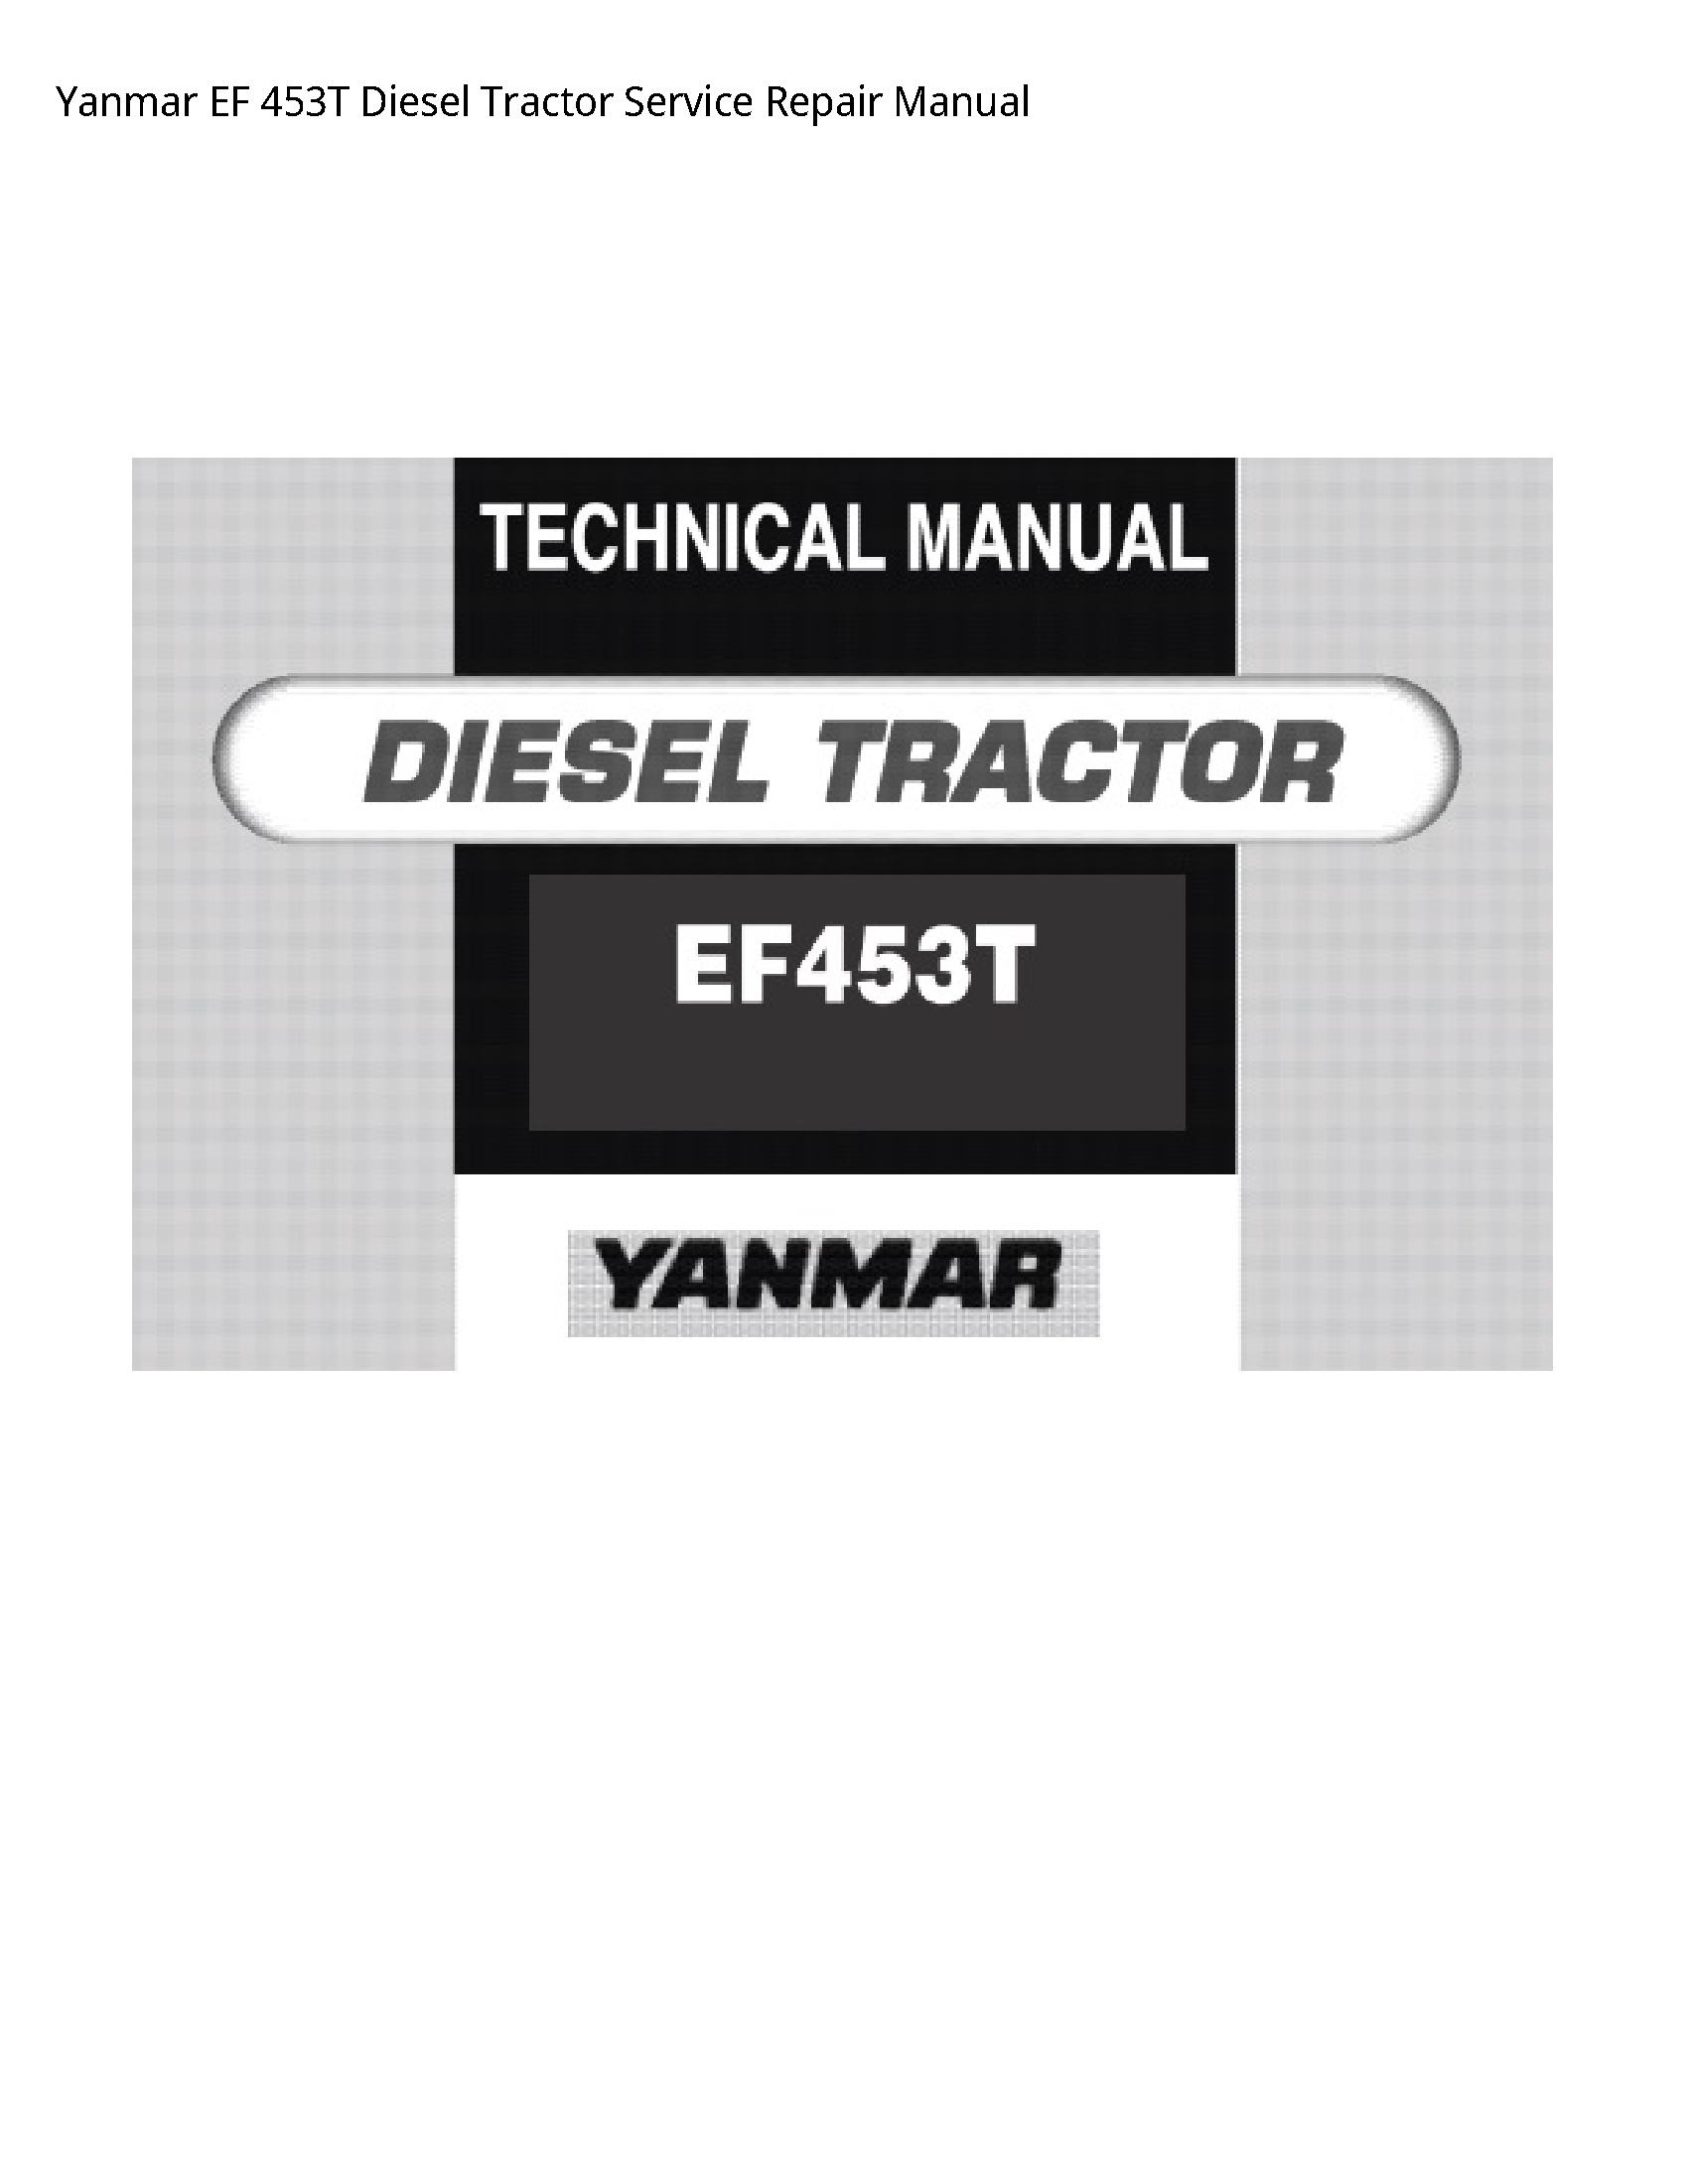 Yanmar 453T EF Diesel Tractor manual